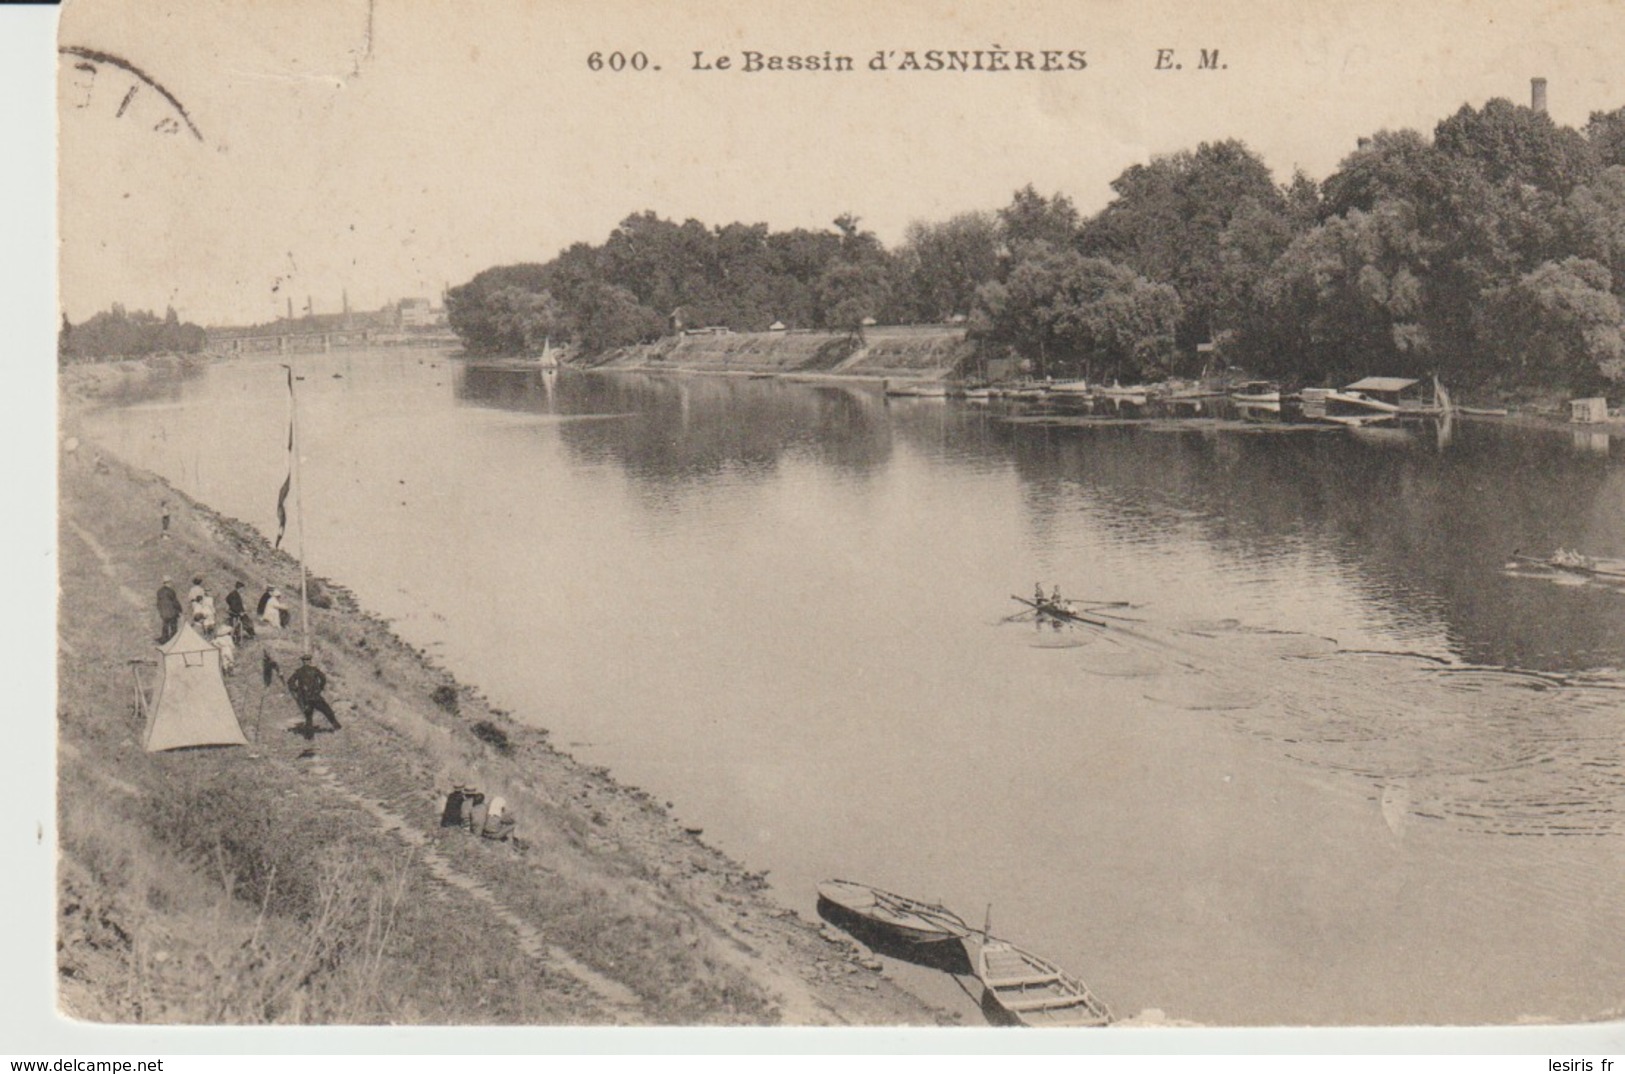 C. P. A. - LE BASSIN D'ASNIERES - E. M.  - 600 - ANIMÉE - Asnieres Sur Seine